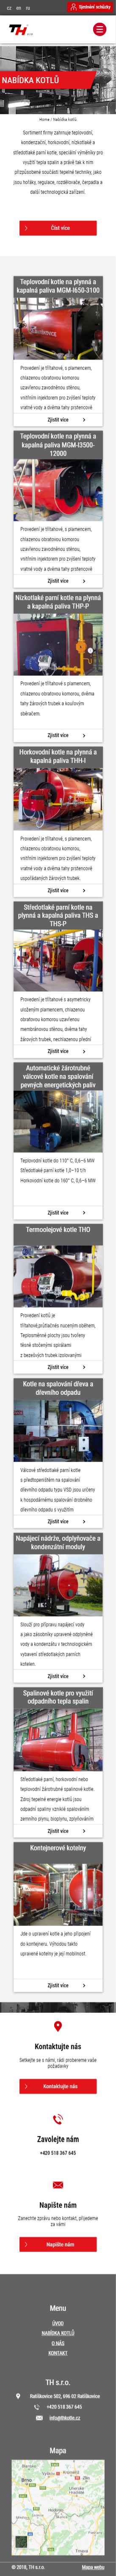 Tvorba nové internetové prezentace TH-Kotle.cz - Screenshot mobilní verze